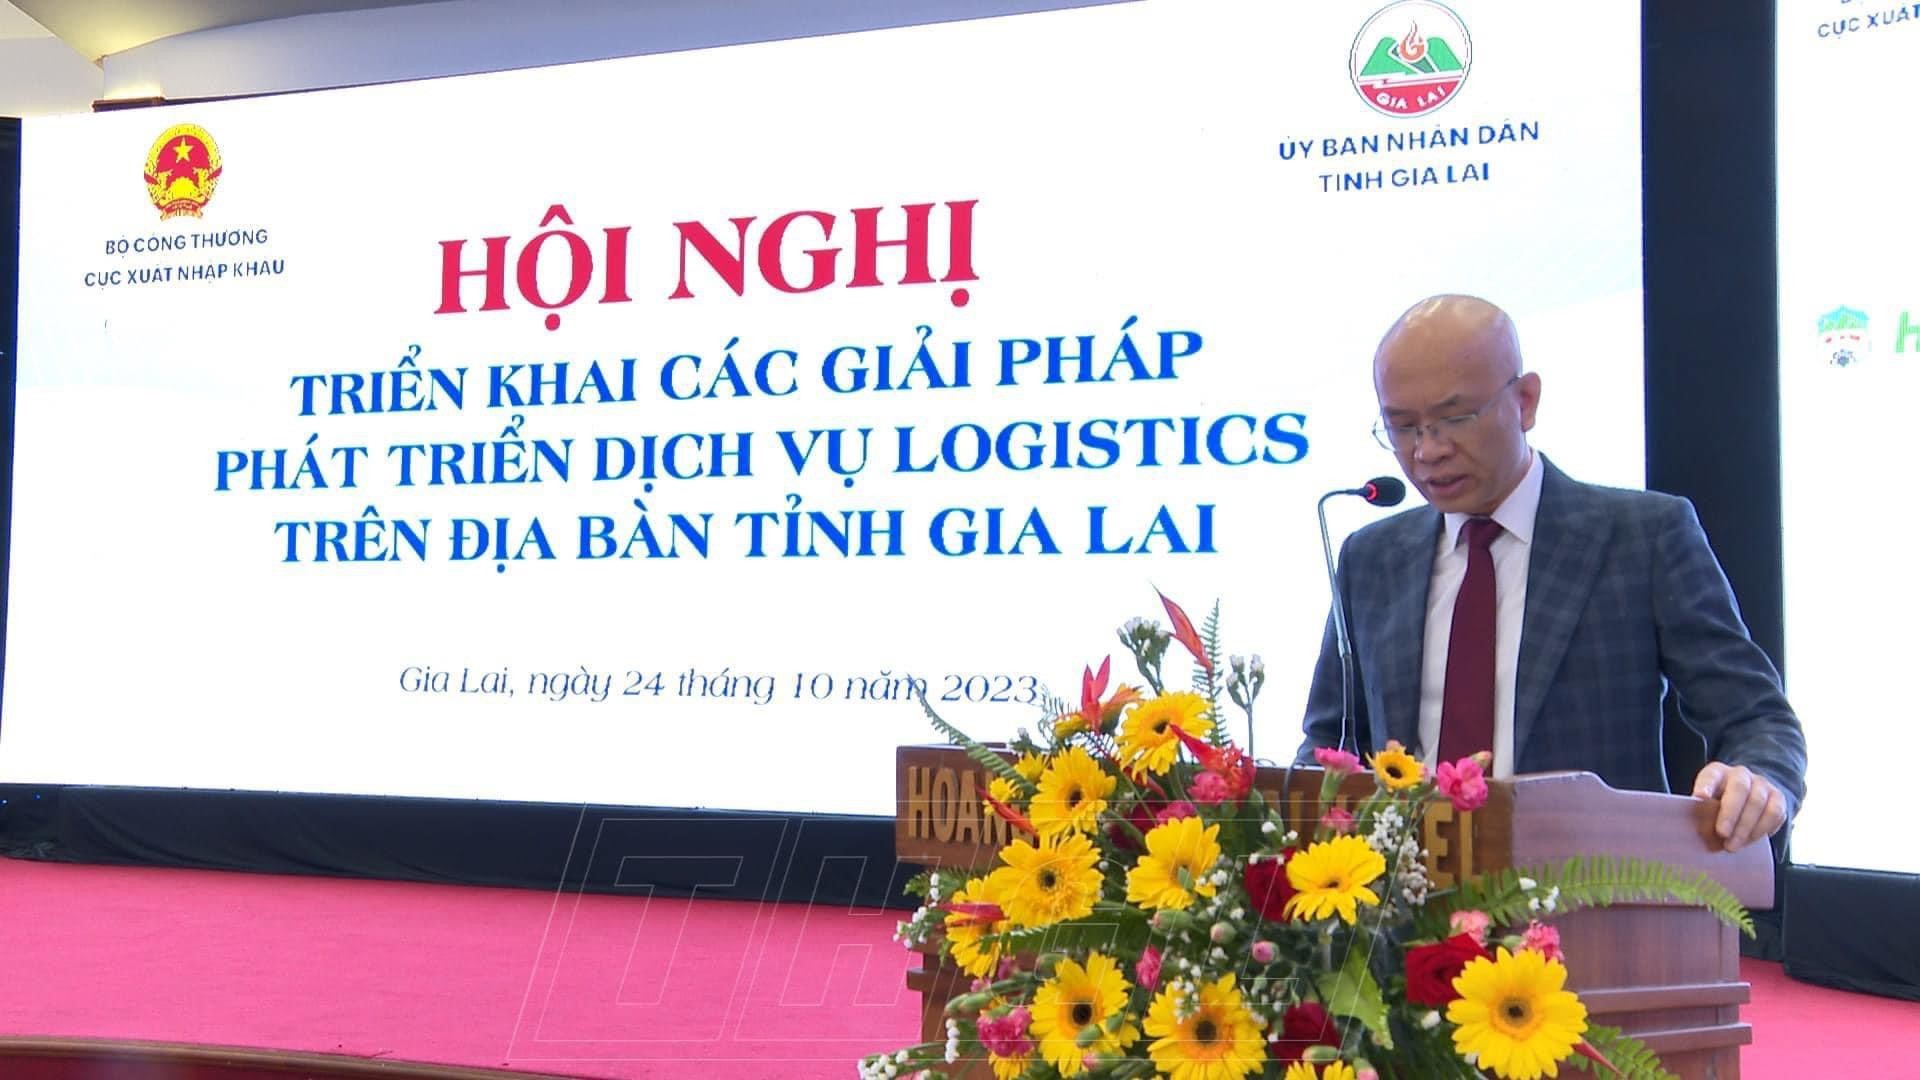 ông Trần Thanh Hải - Phó Cục trưởng Cục Xuất nhập khẩu (Bộ Công Thương) phat biểu tại hội nghị.